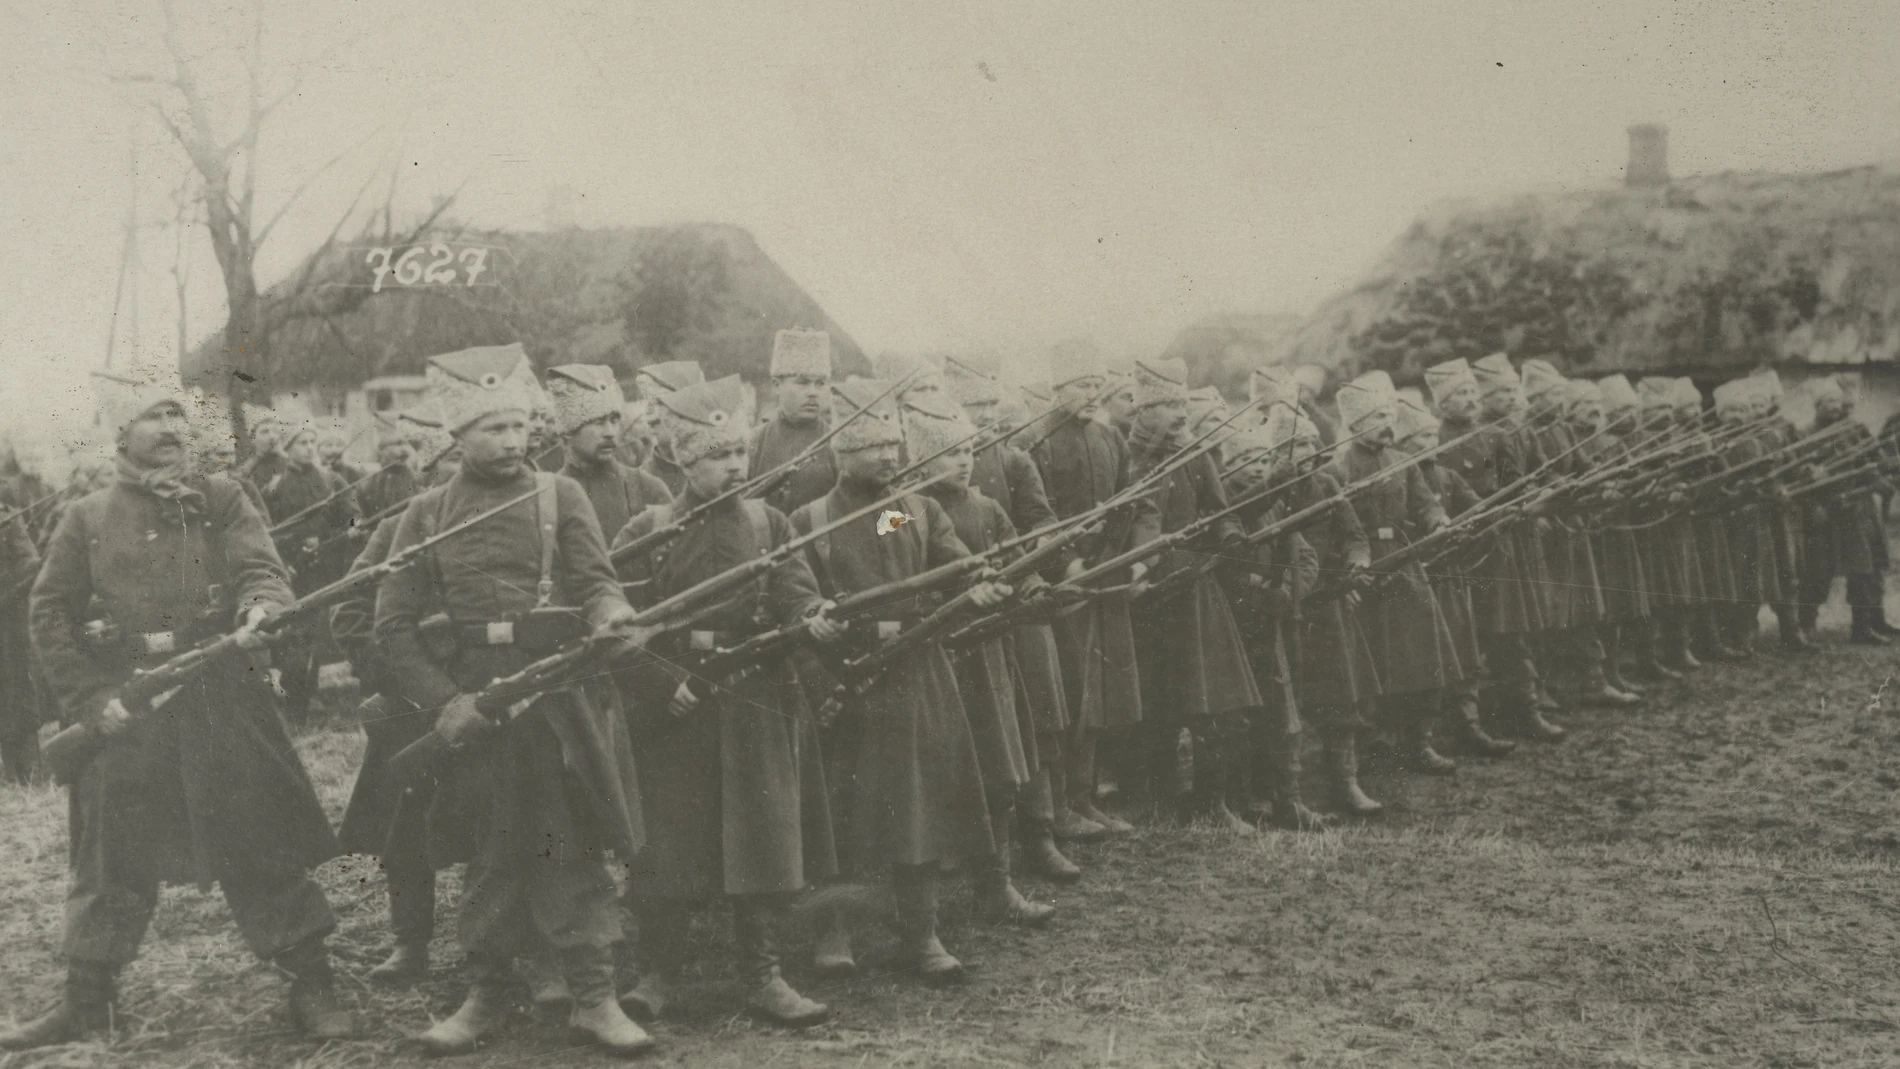 Tropas ucranianas de la 1.ª División, llamada de los "capotes azules", en un ejercicio de entrenamiento